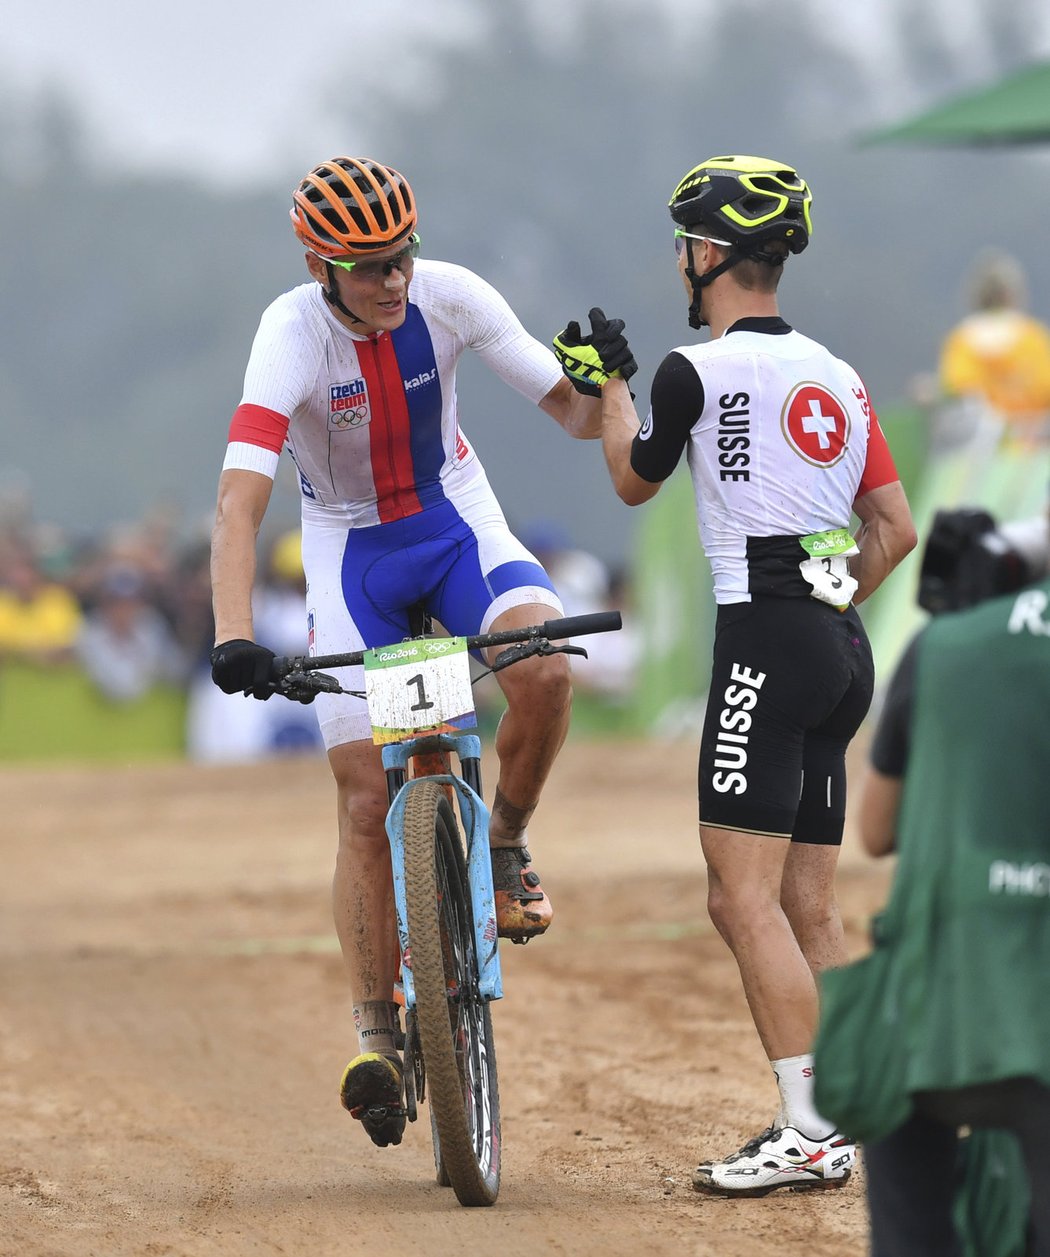 Stříbrný Jaroslav Kulhavý se zdraví s vítězným Nino Schurterem v cíli olympijského závodu na horských kolech